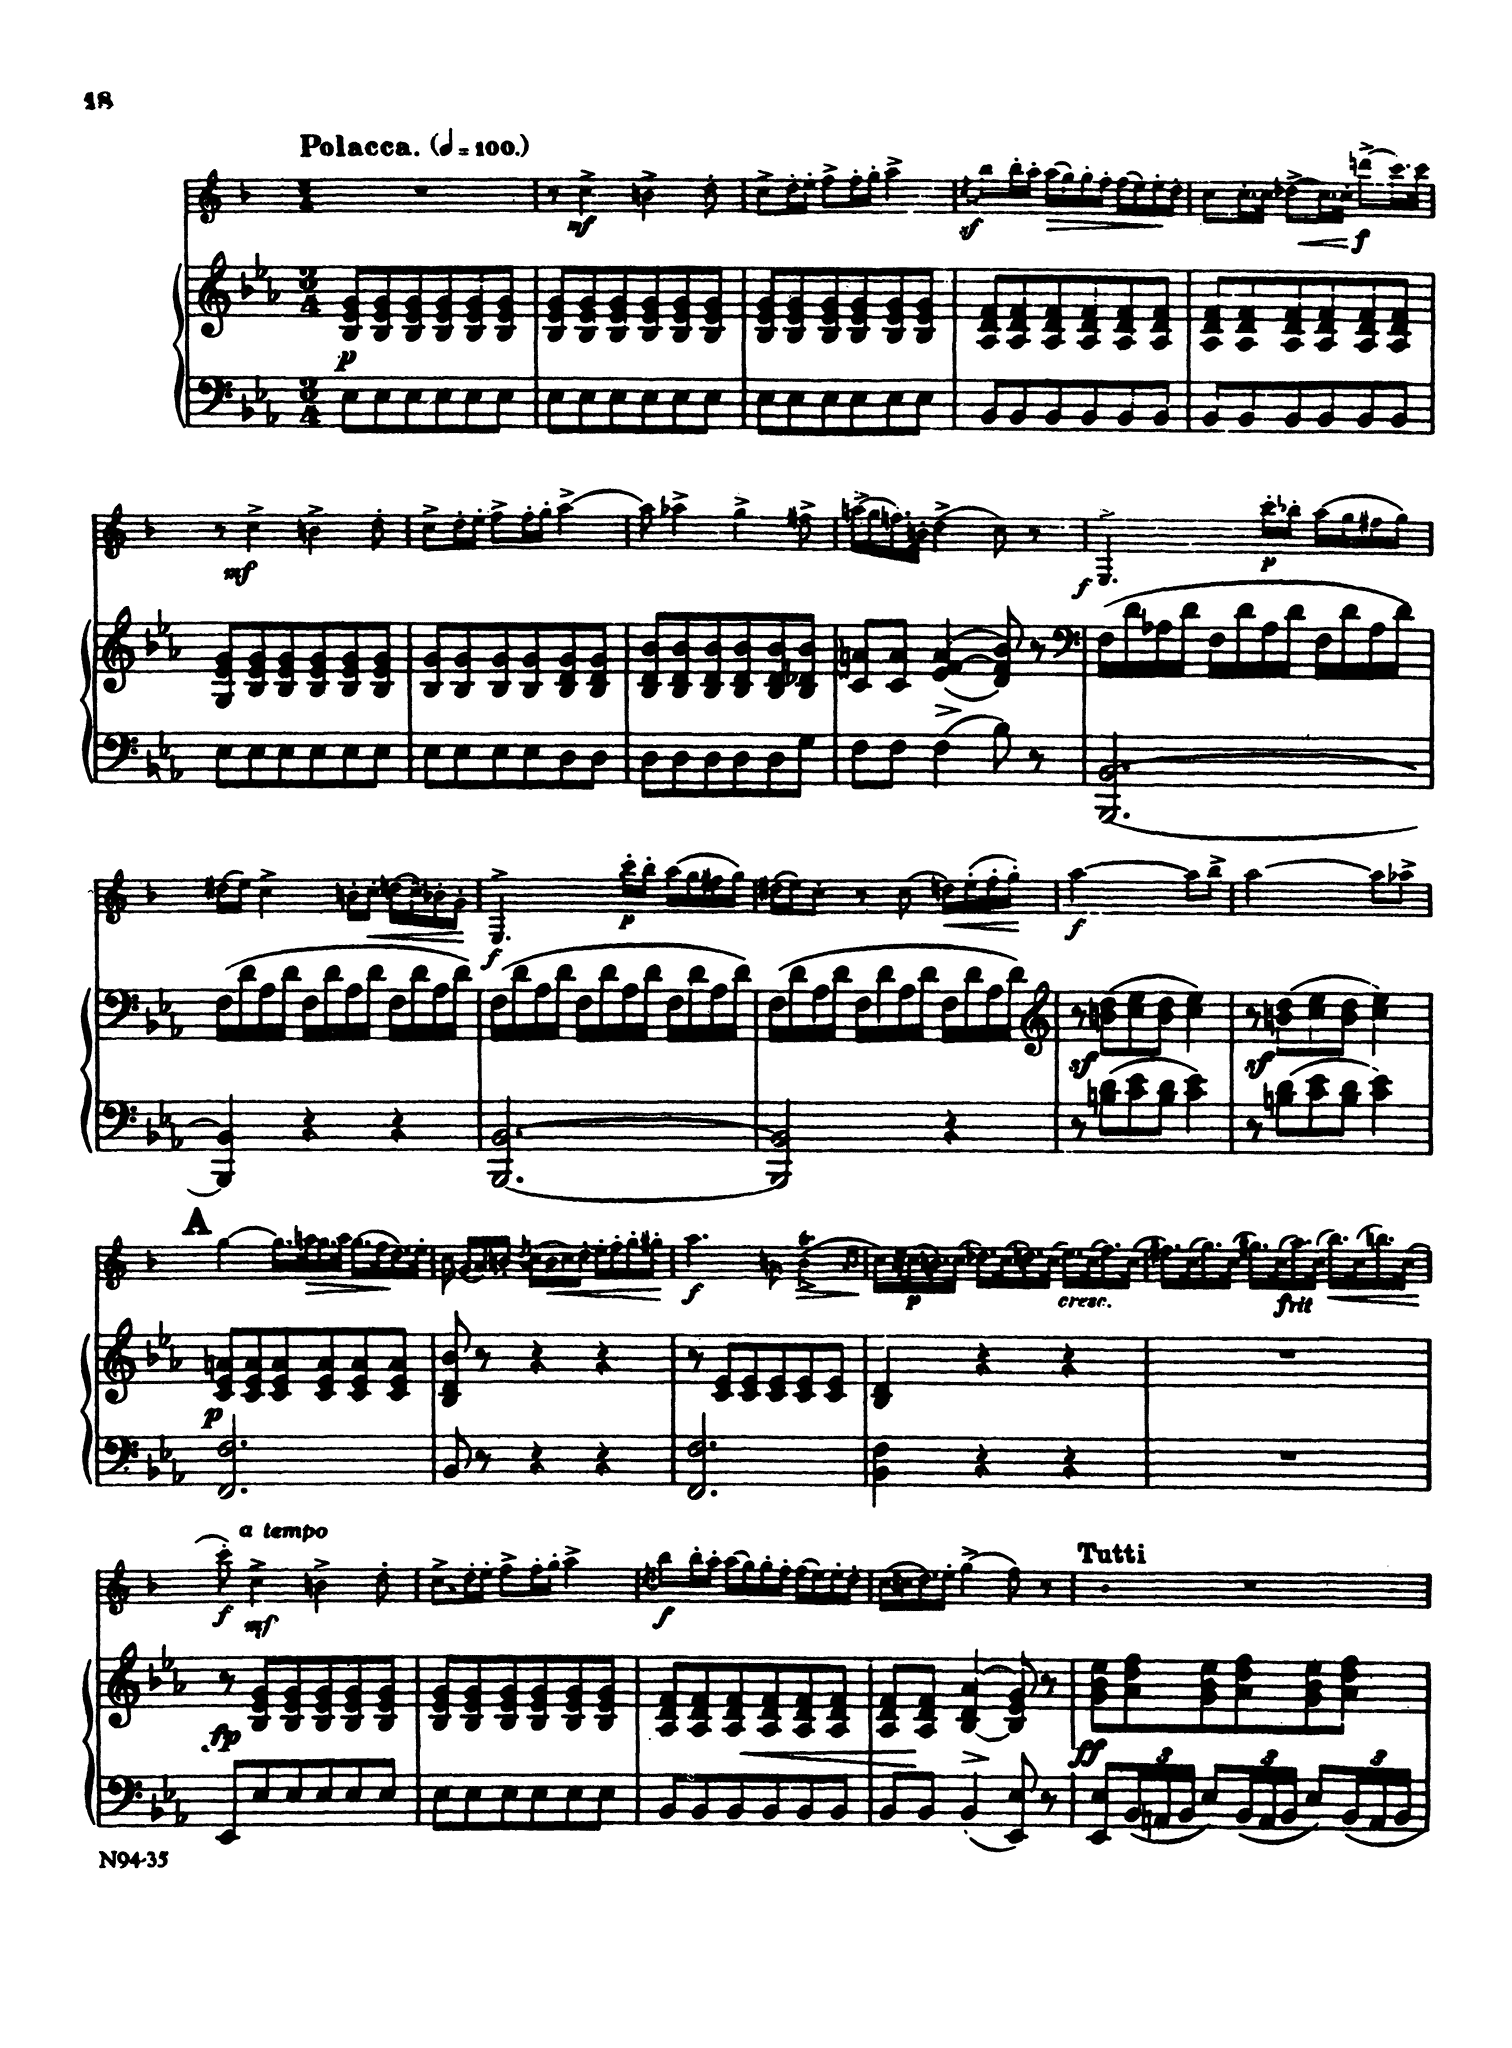 Clarinet Concerto No. 2 Op. 74 - Movement 3